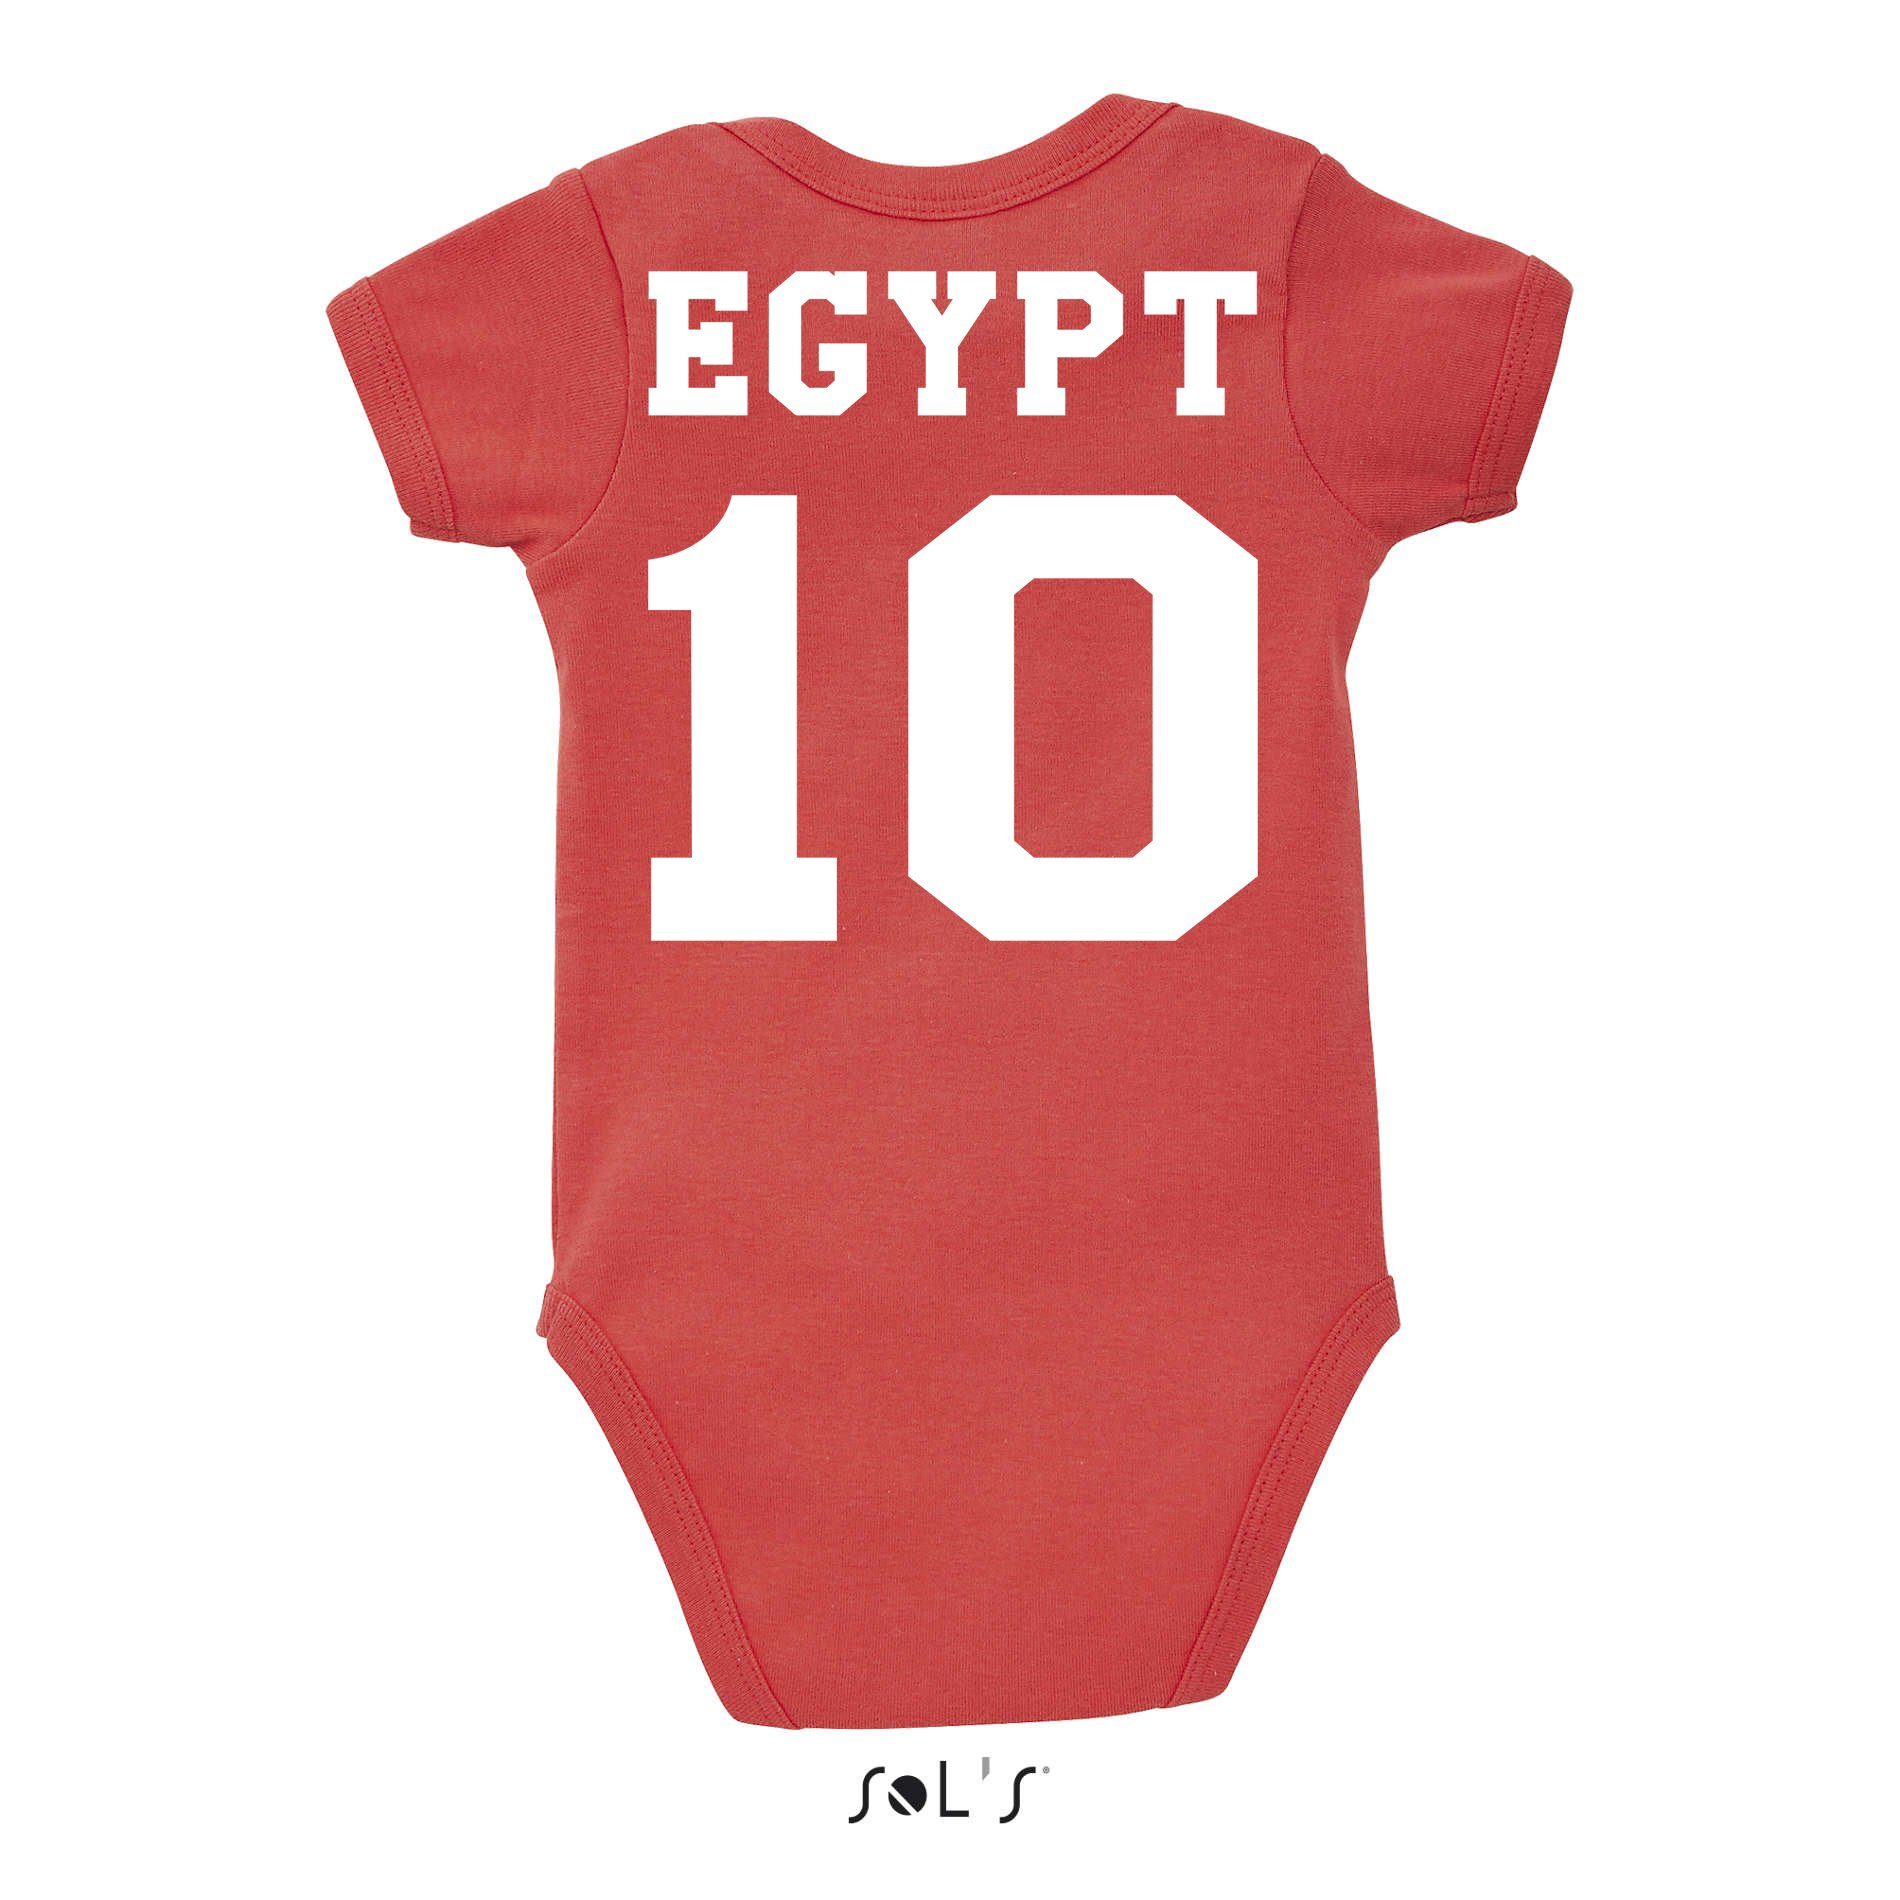 Fußball Kinder Egypt WM Trikot Brownie Meister Strampler Sport Ägypten & Cup Afrika Blondie Baby